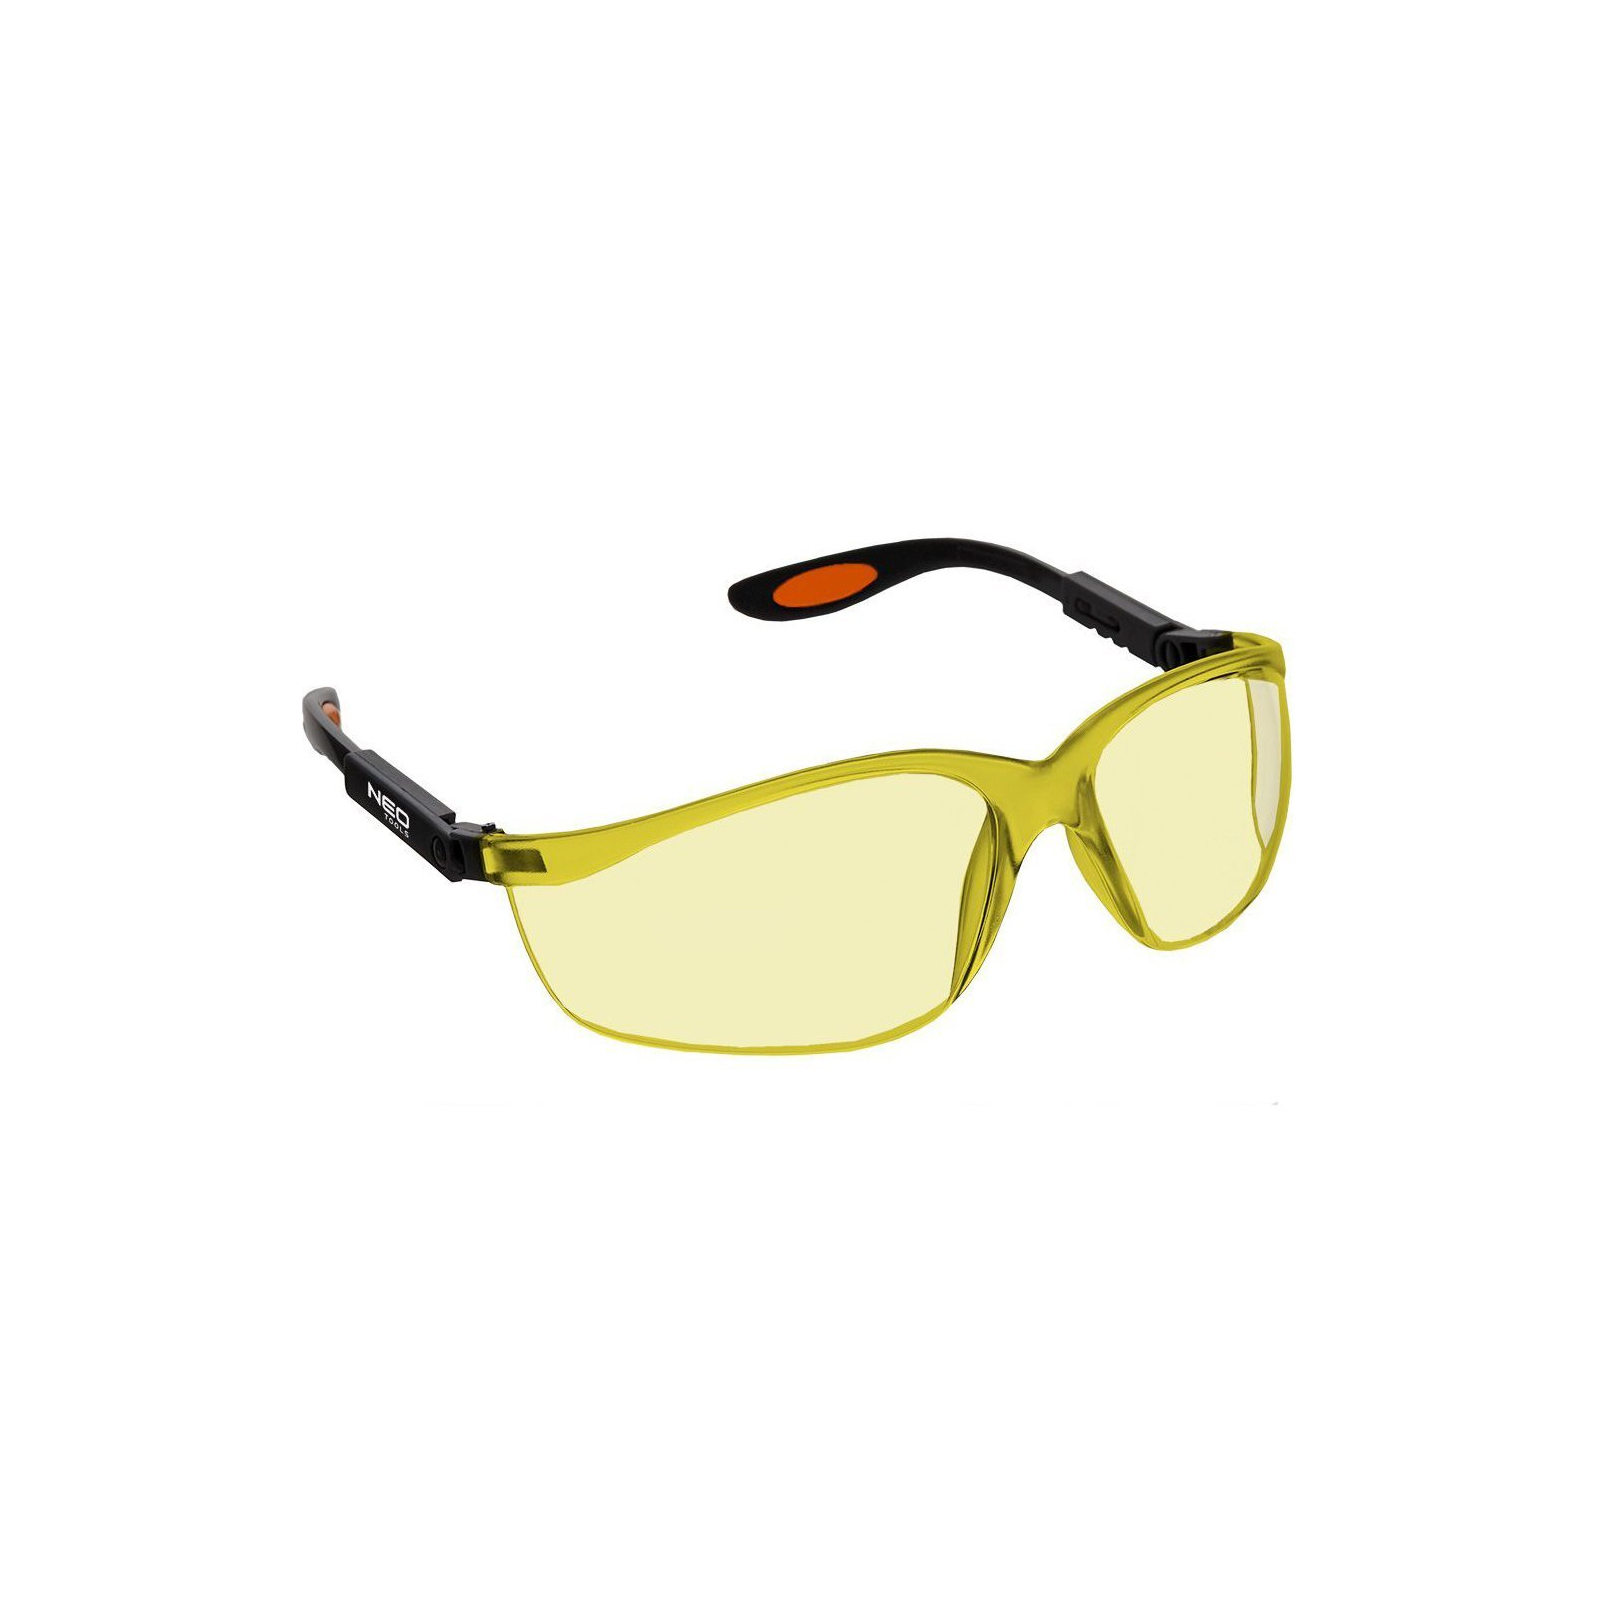 Защитные очки Neo Tools противоосколочные, нейлоновые скобки, стойкие к царапинам, желтые (97-501) изображение 2